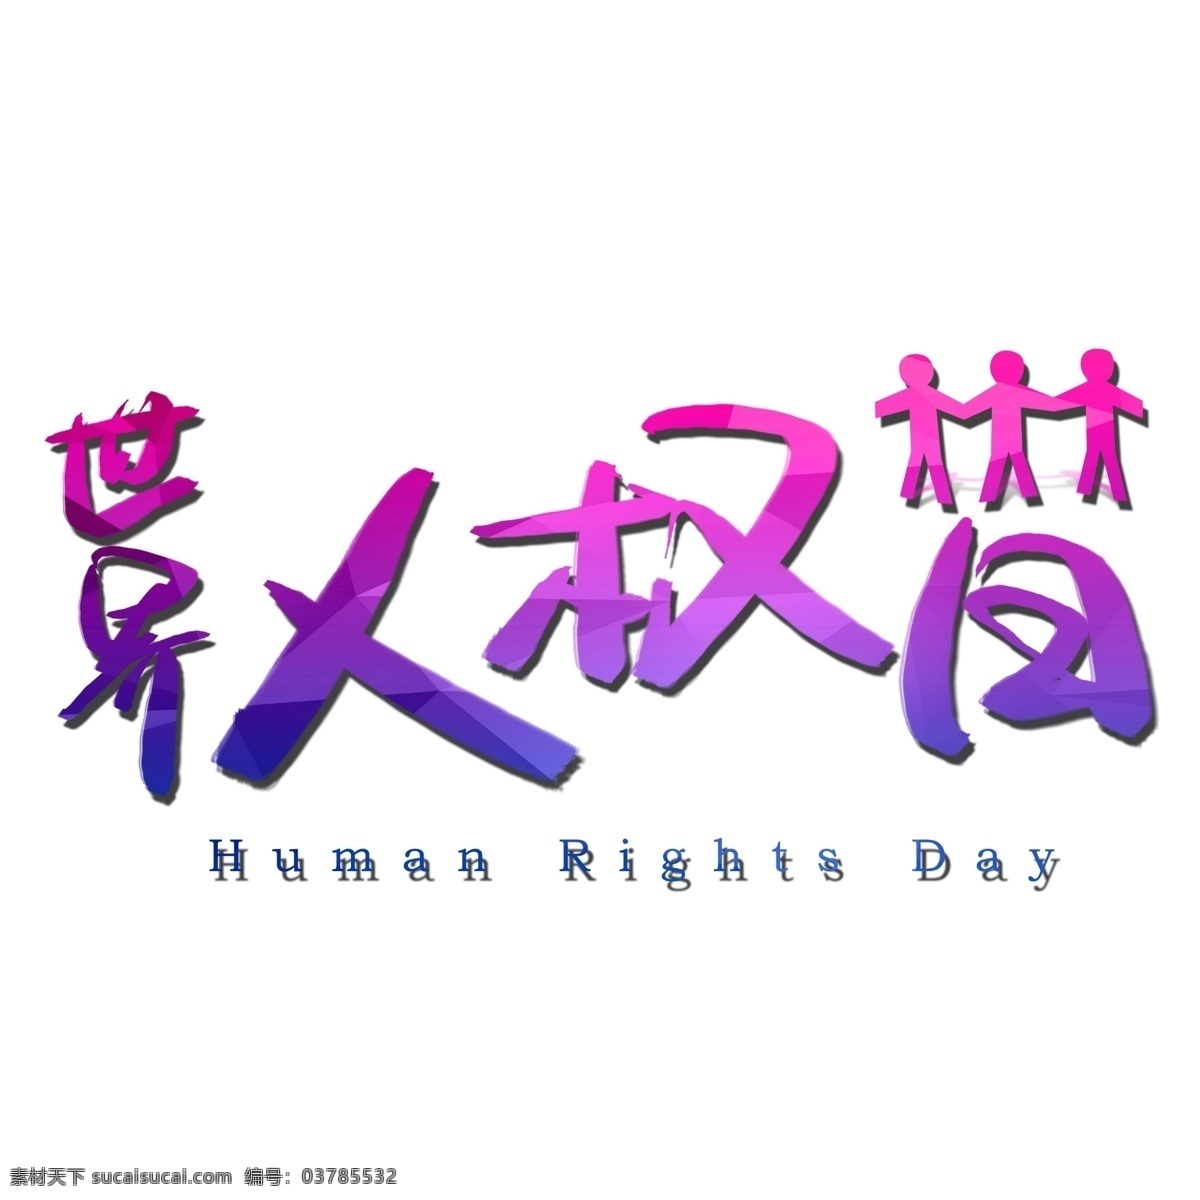 世界 人权 日 手写 手绘 书法艺术 字 人权日 human day rights